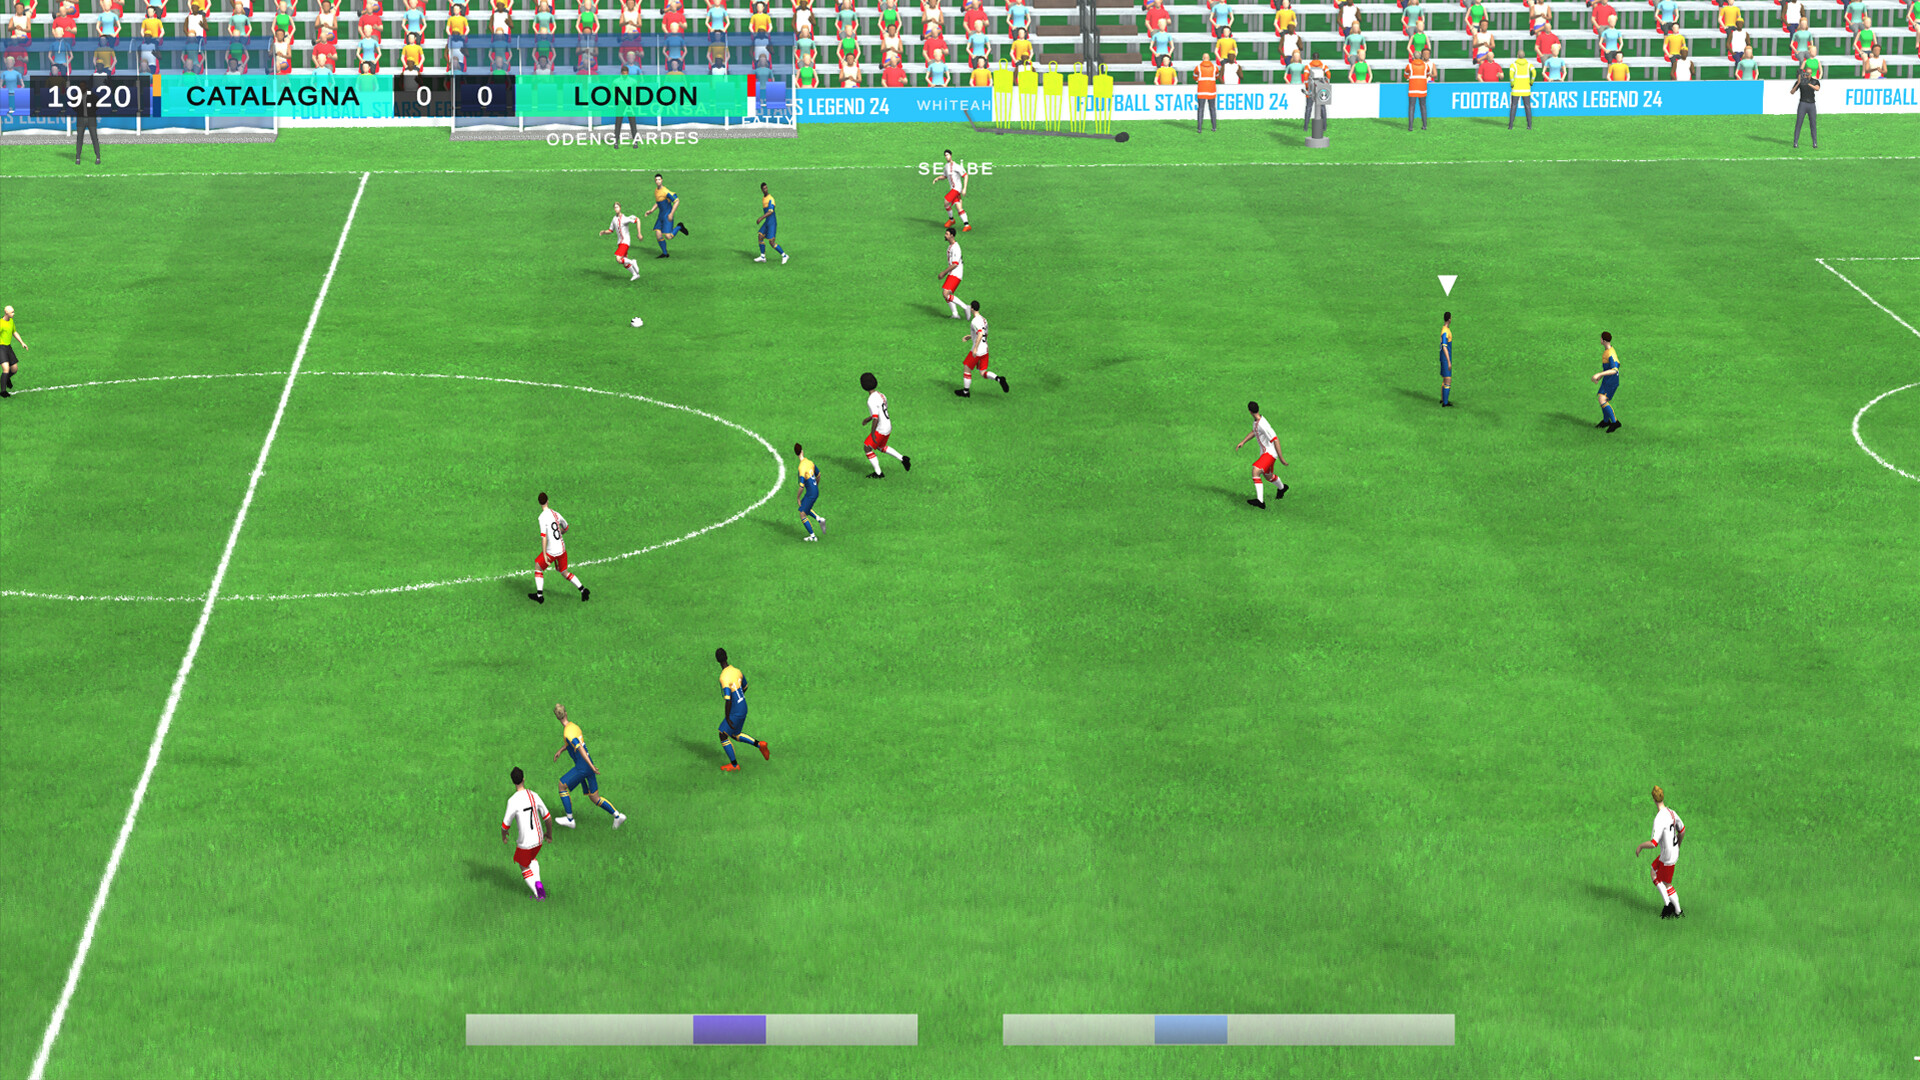 足球模拟游戏足球明星传奇24Steam页面上线 支持简中_1